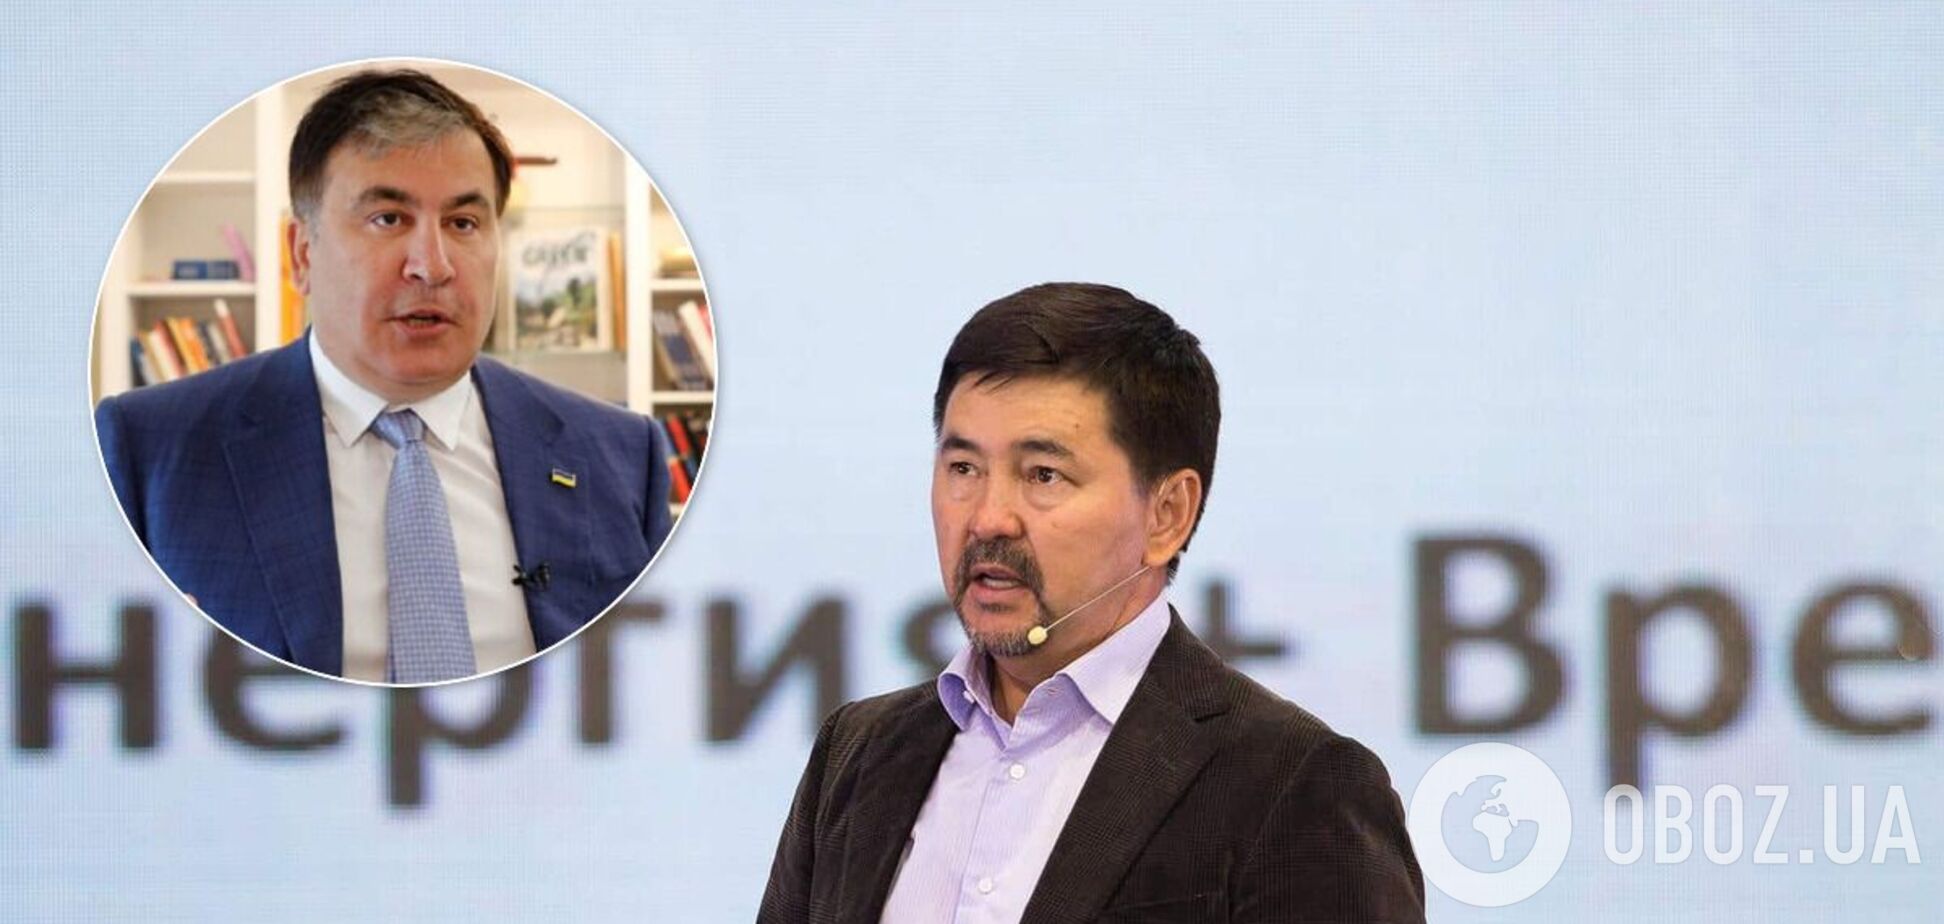 Членом команды Саакашвили стал миллионер из Казахстана Маргулан Сейсембай